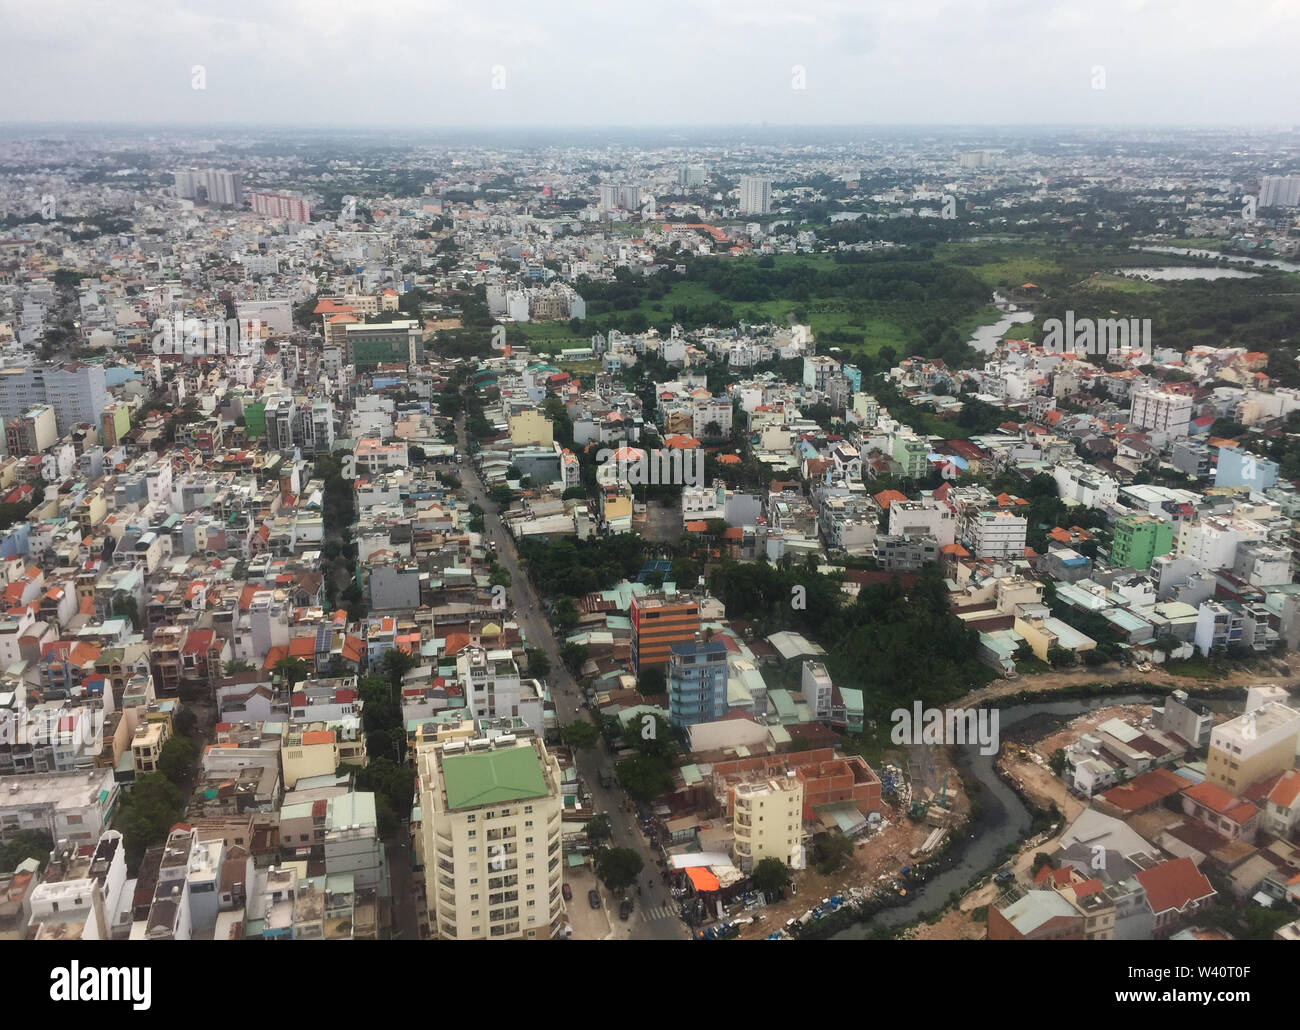 Saigon, Vietnam Jul 6, 2019. Aerial view of Saigon (called Ho Chi